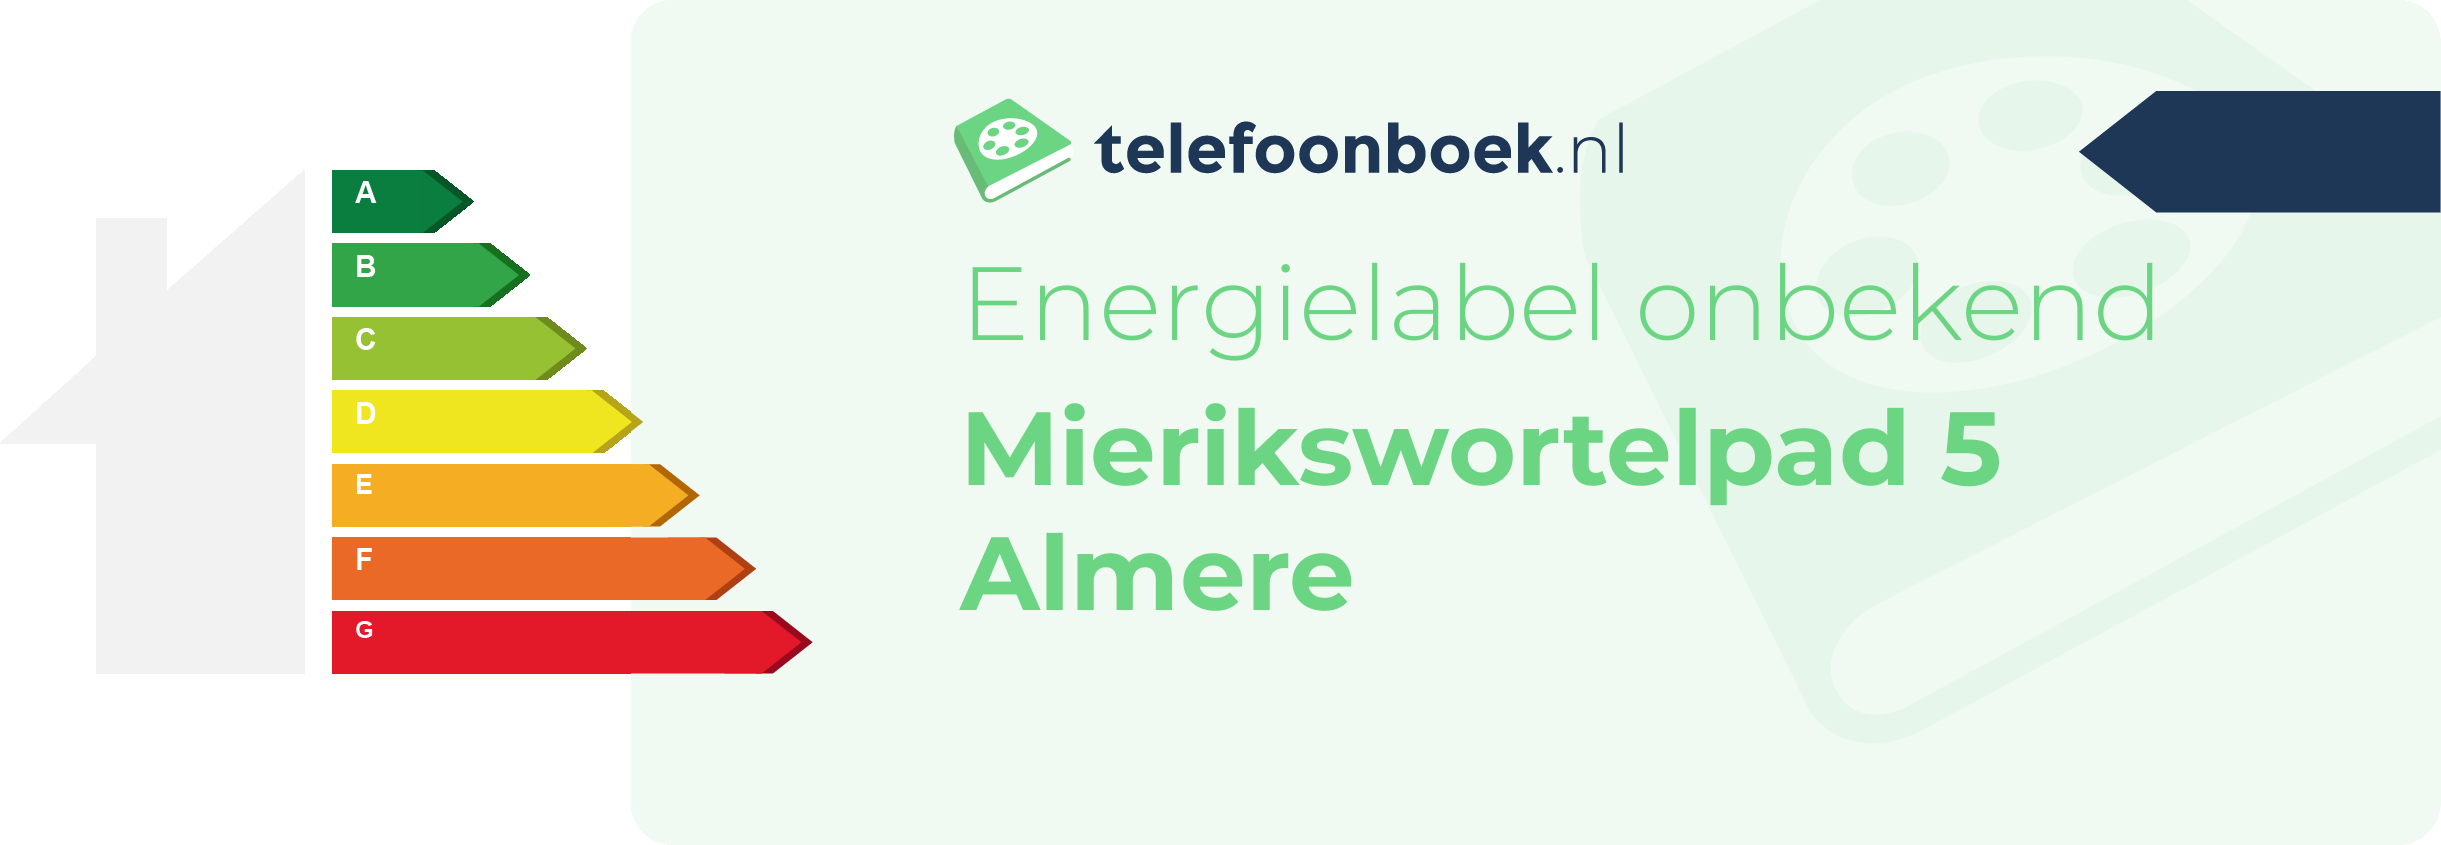 Energielabel Mierikswortelpad 5 Almere